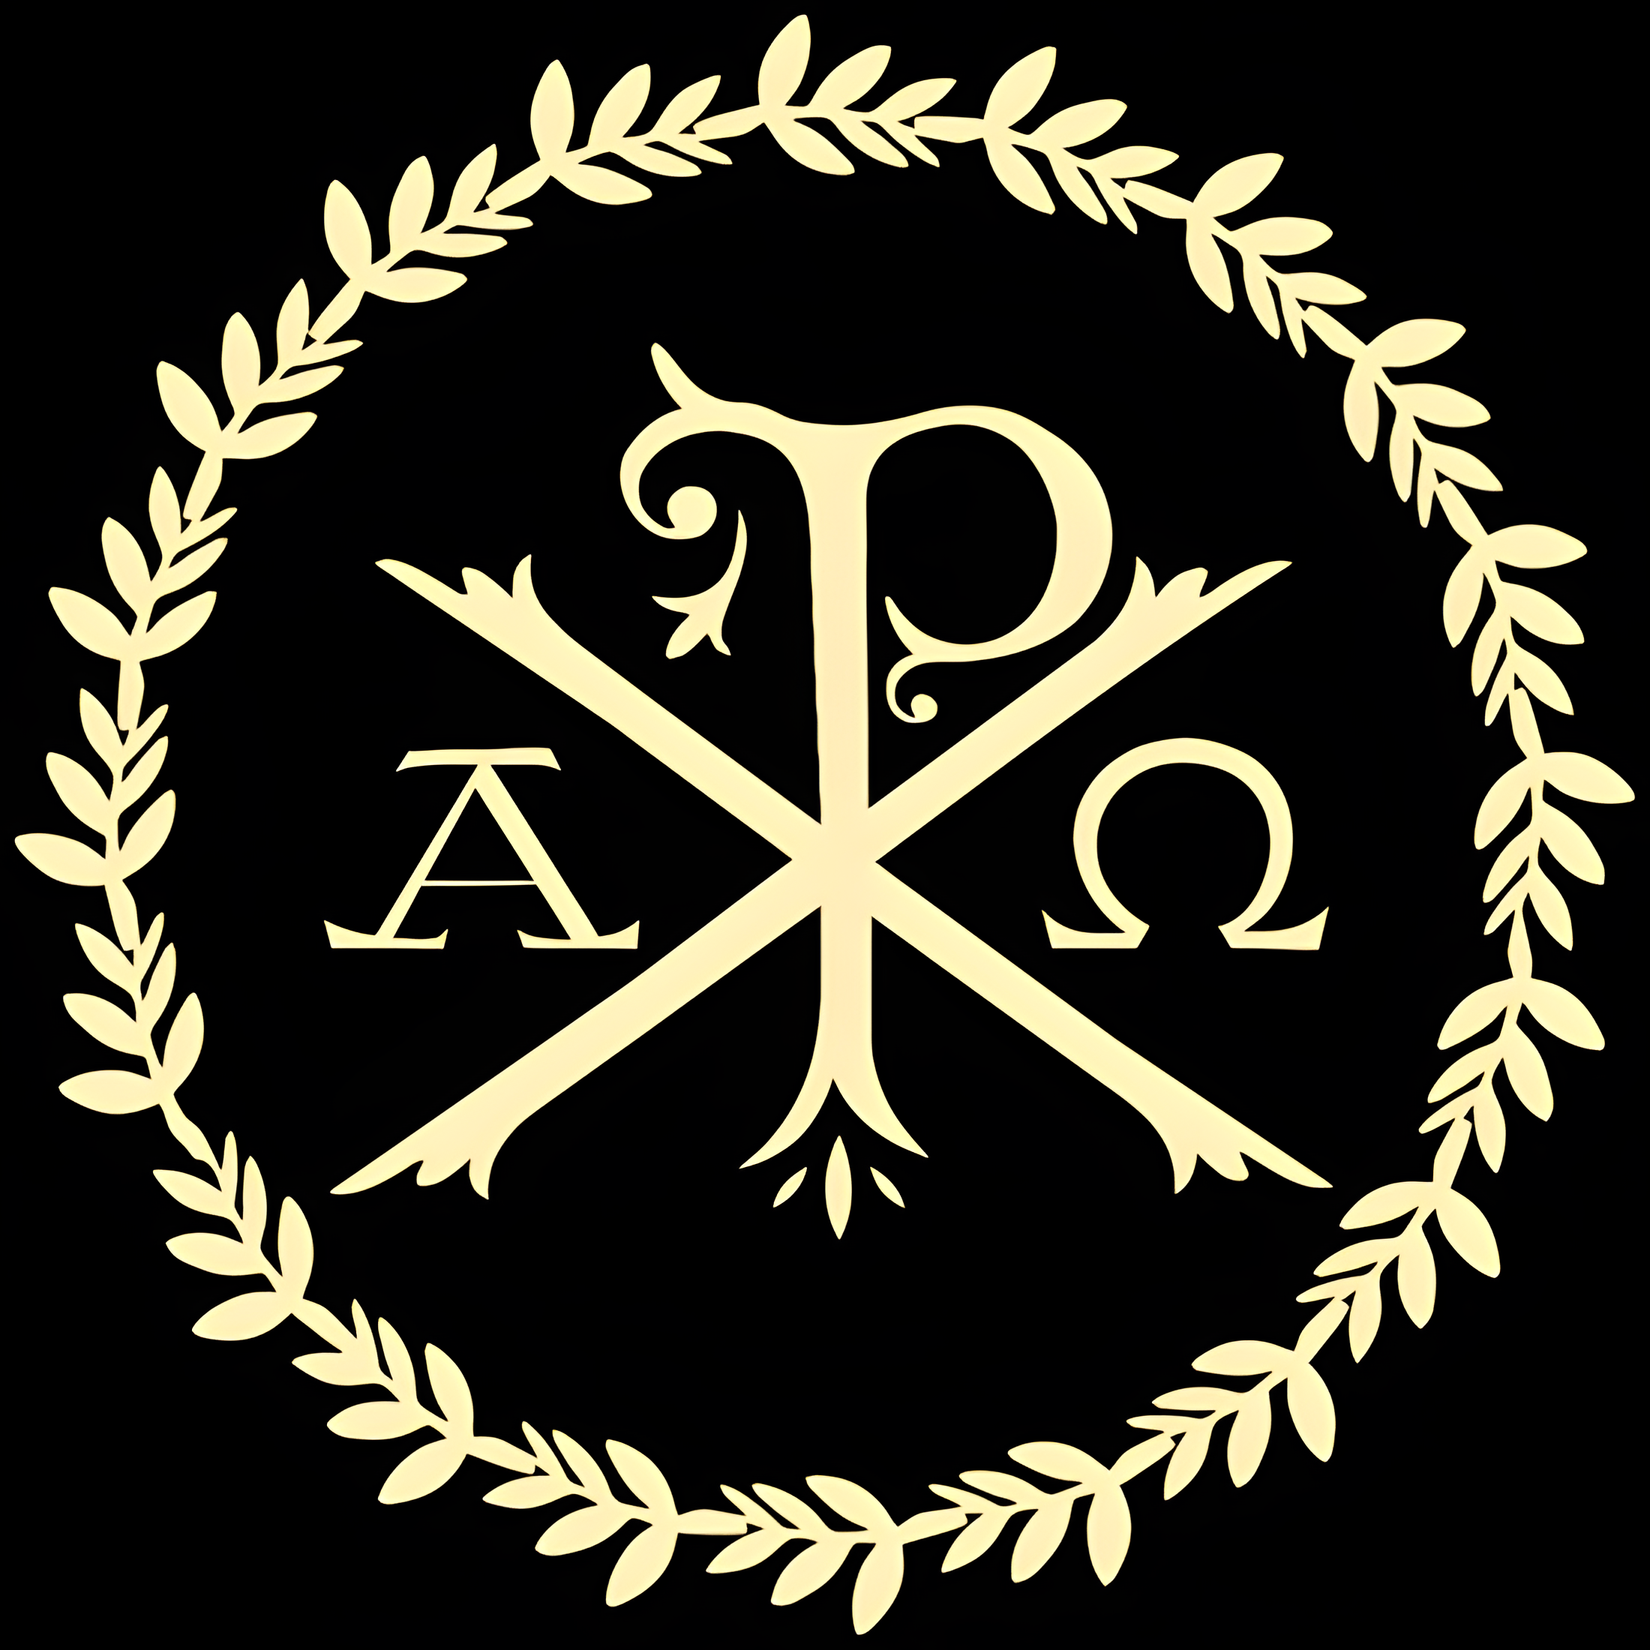 General 1650x1650 Chi rho Christianity catholic alpha omega Latin black background wreath